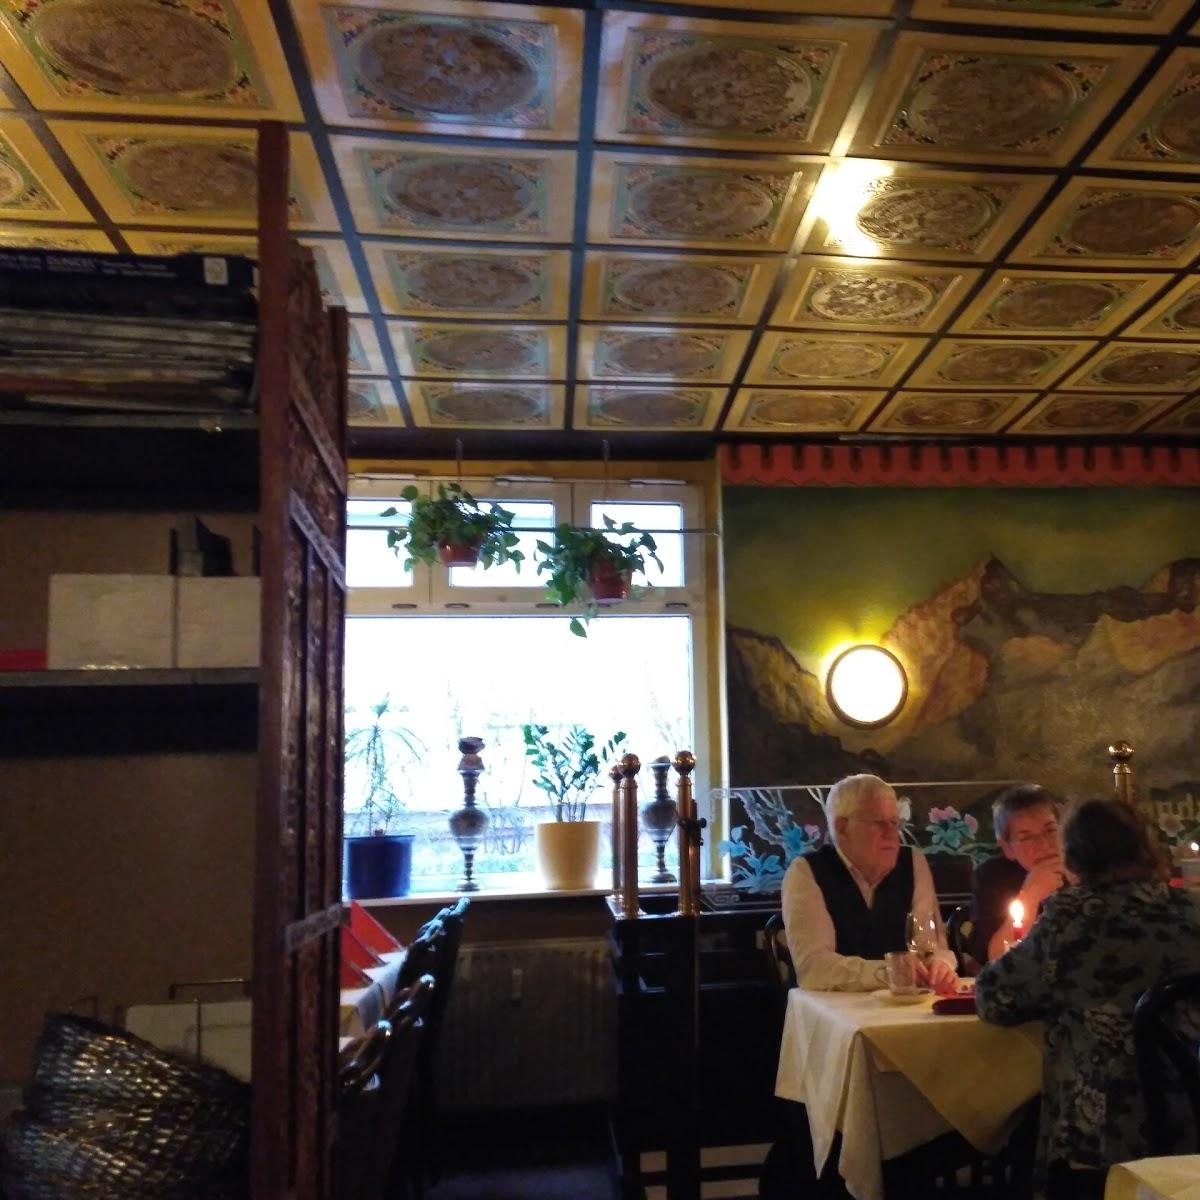 Restaurant "India-Haus" in Berlin